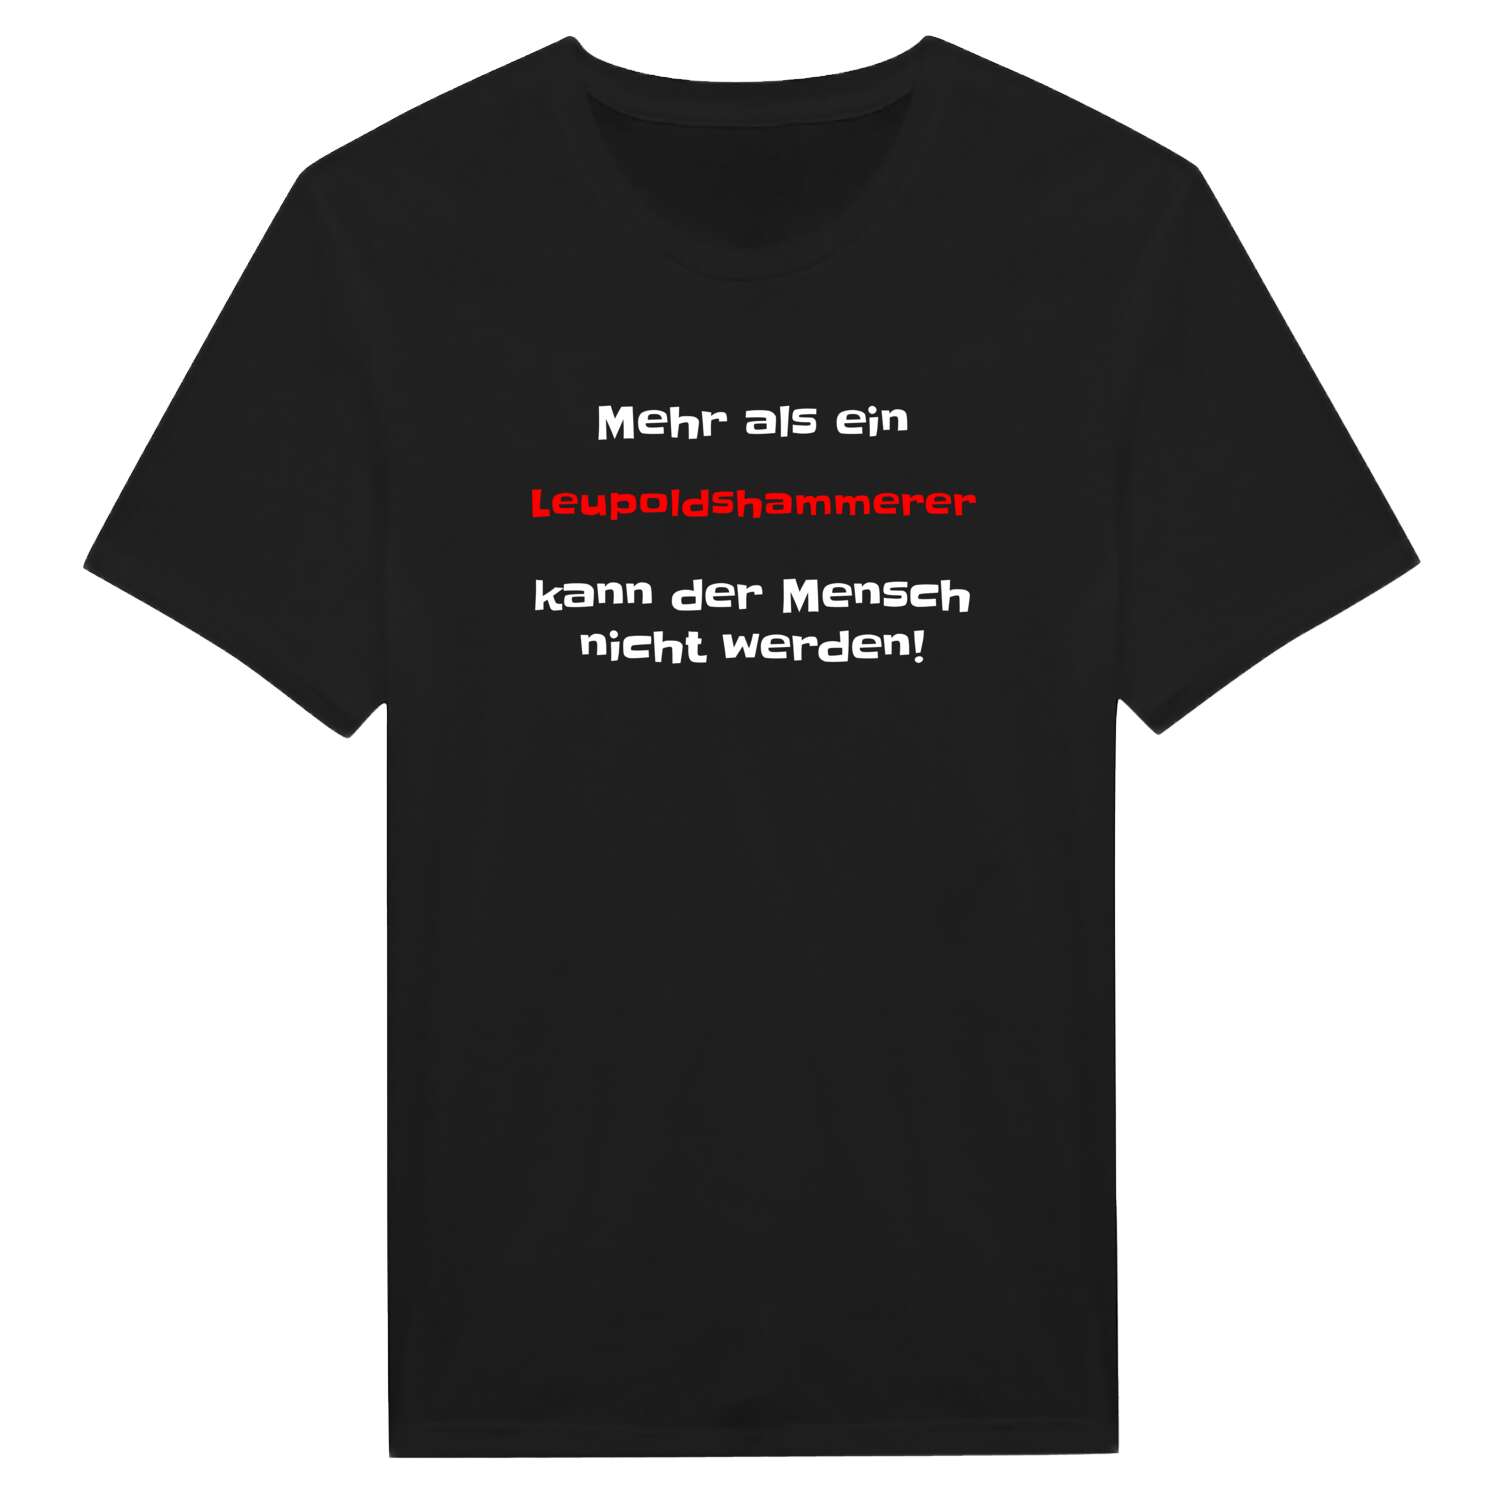 Leupoldshammer T-Shirt »Mehr als ein«